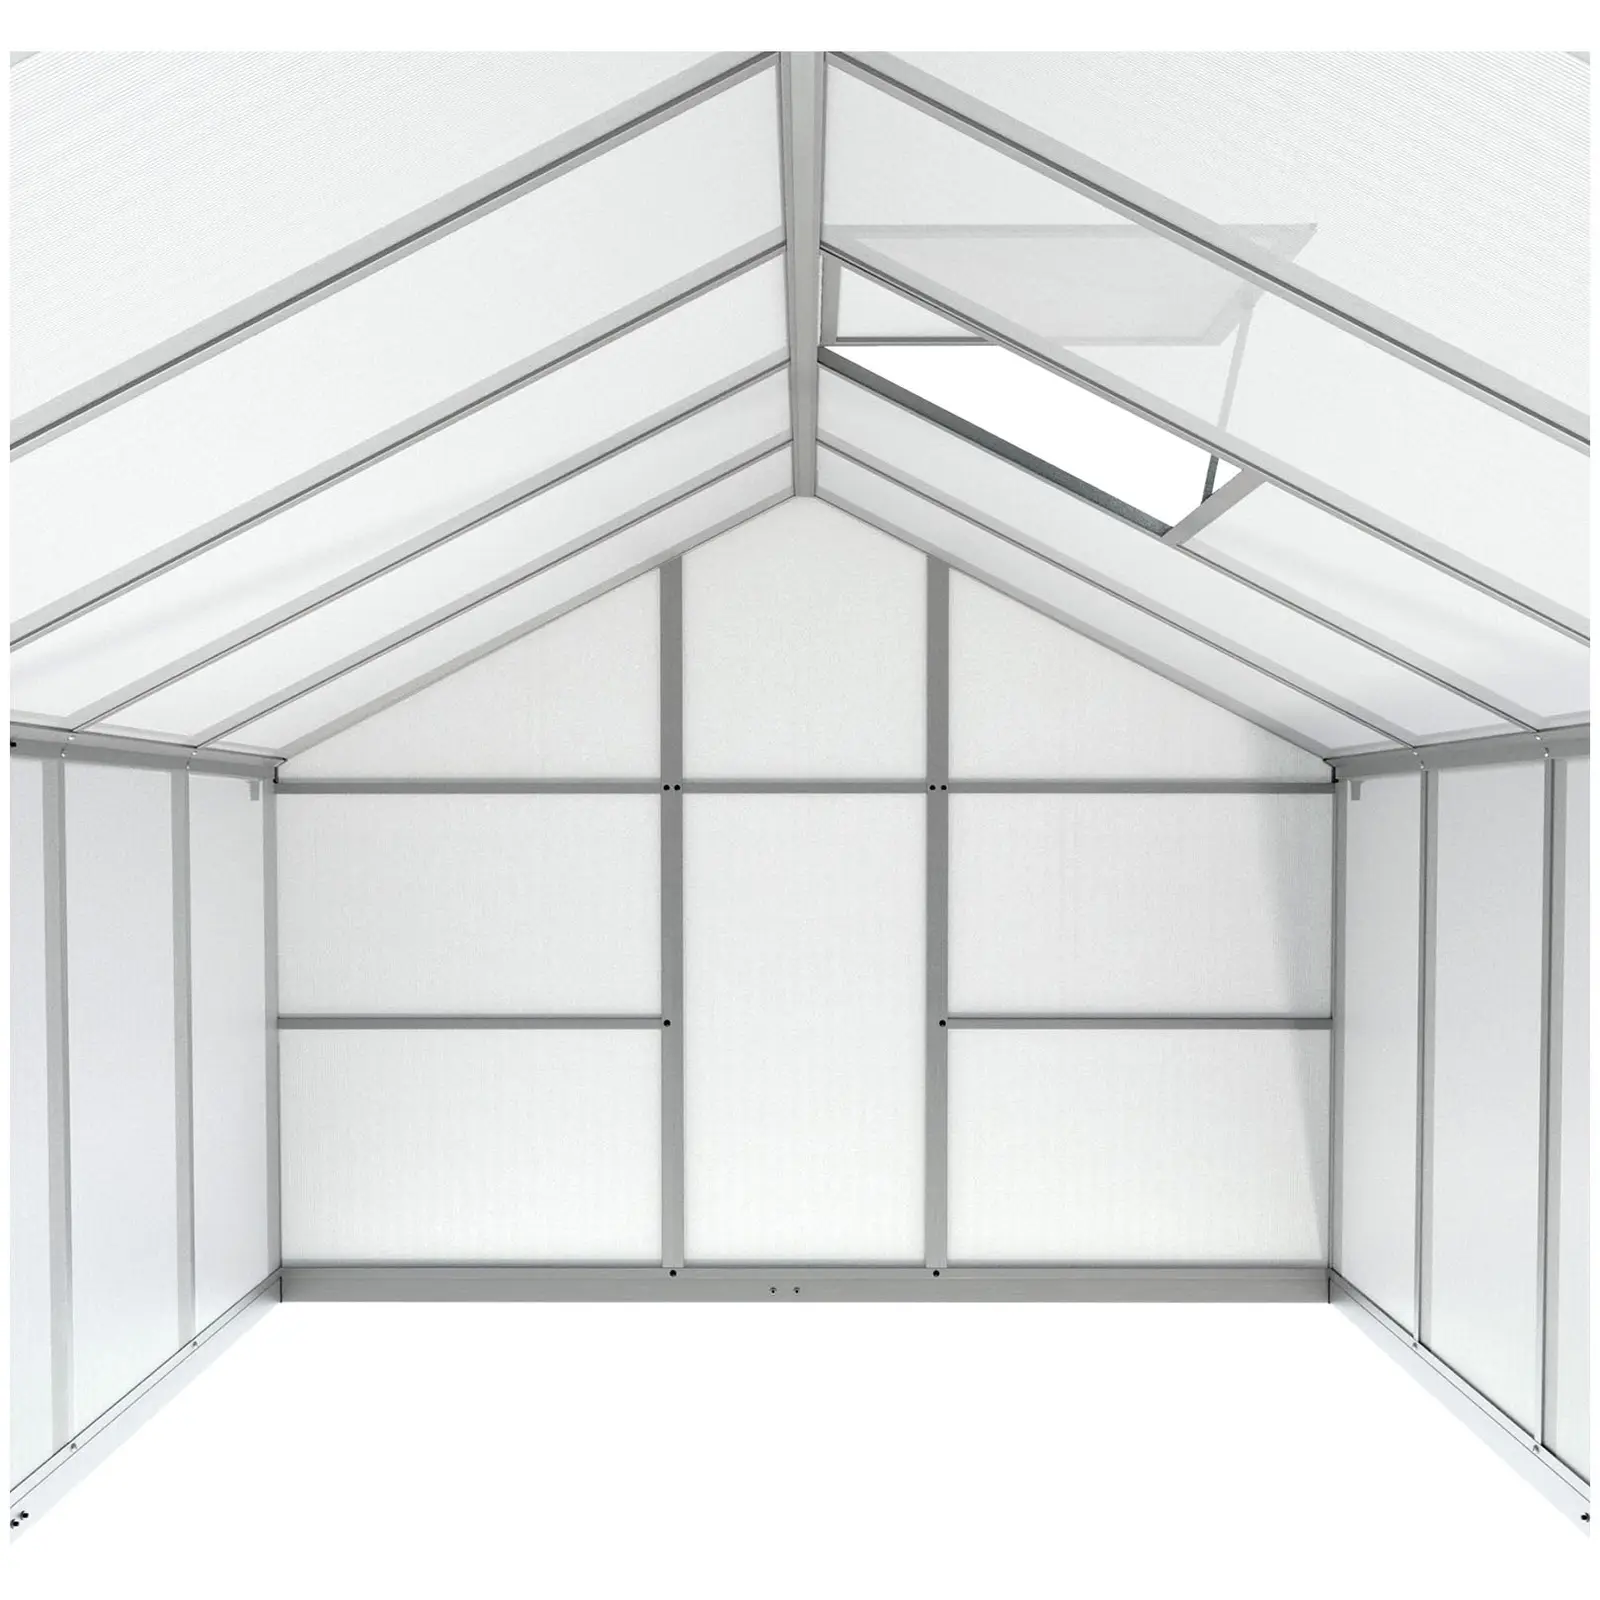 Gewächshaus - 301 x 238 x 195 cm - Polycarbonat + Aluminium